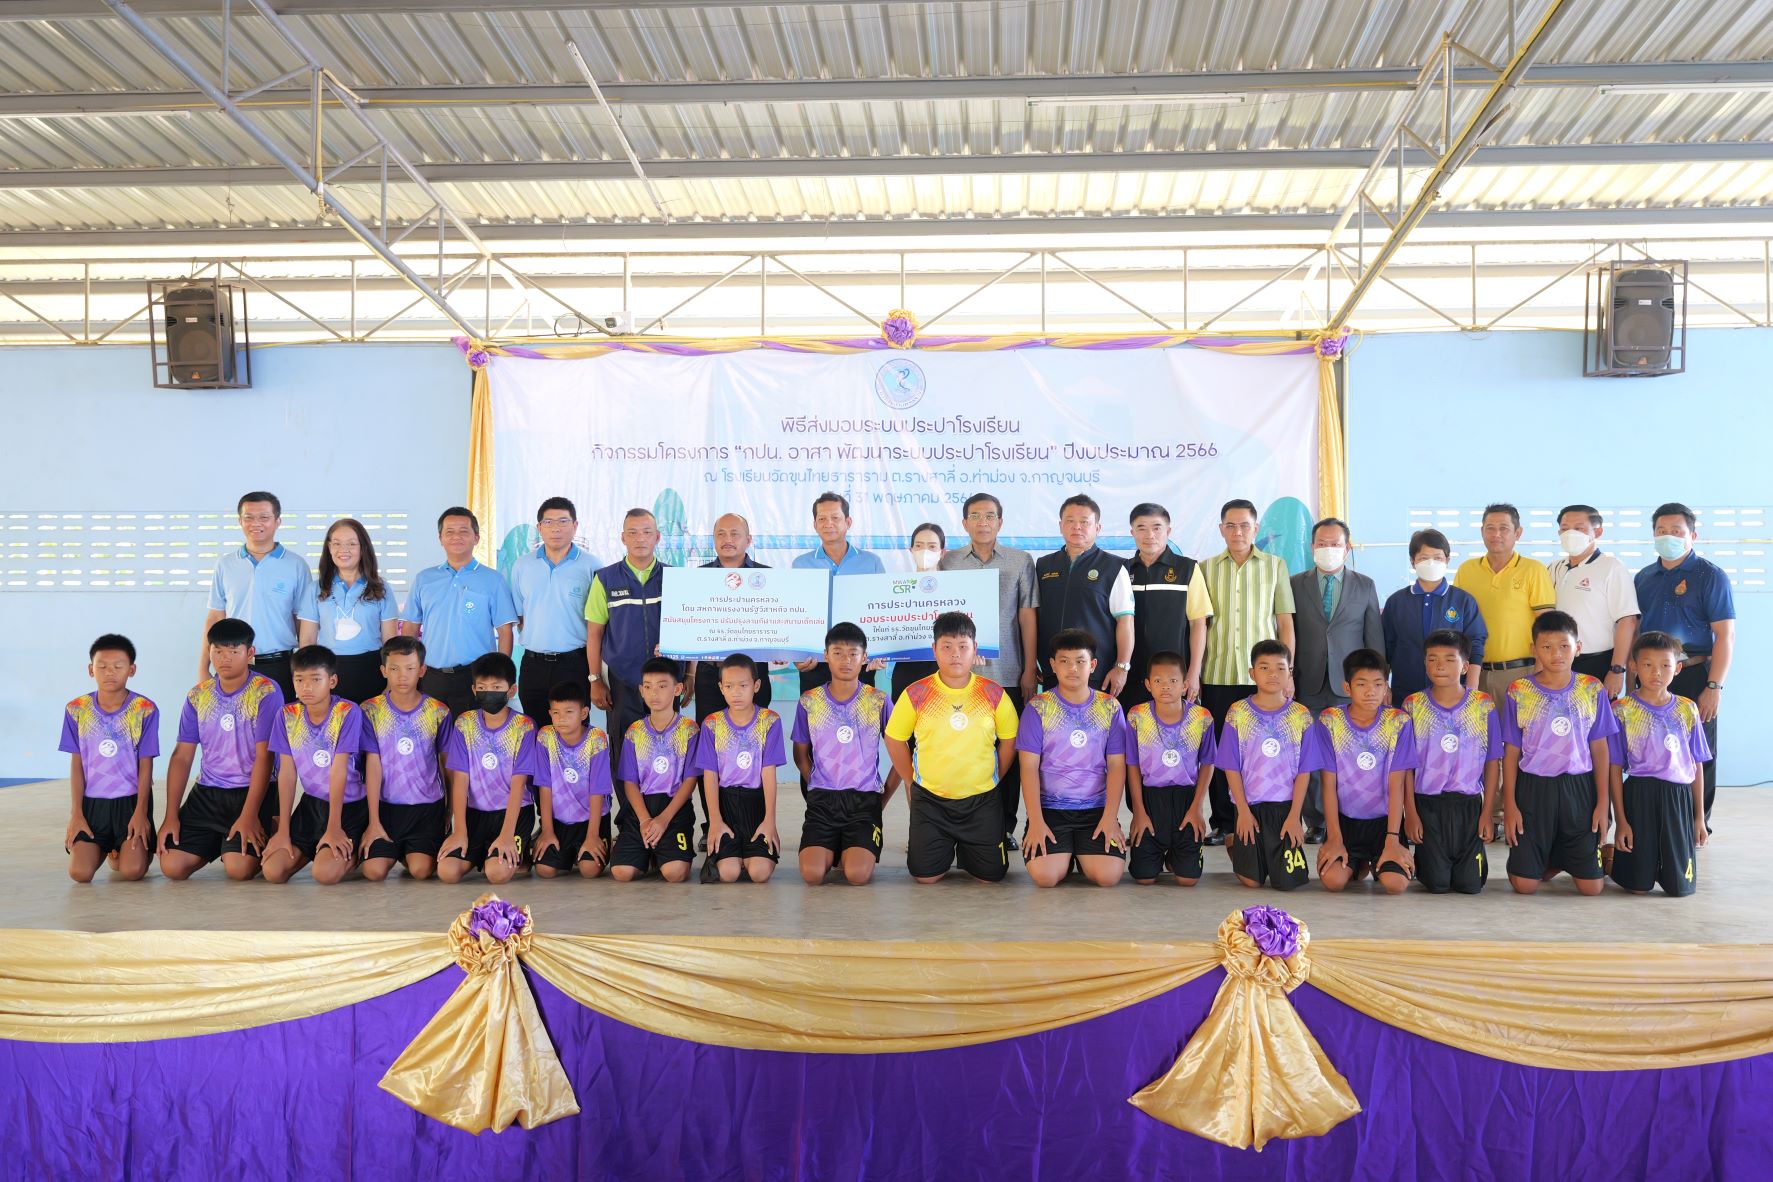 กปน. สานต่อ โครงการ “กปน. อาสา พัฒนาระบบประปาโรงเรียน” ปี 2566 ส่งมอบระบบประปาโรงเรียน ณ โรงเรียนวัดขุนไทยธาราราม อำเภอท่าม่วง จังหวัดกาญจนบุรี